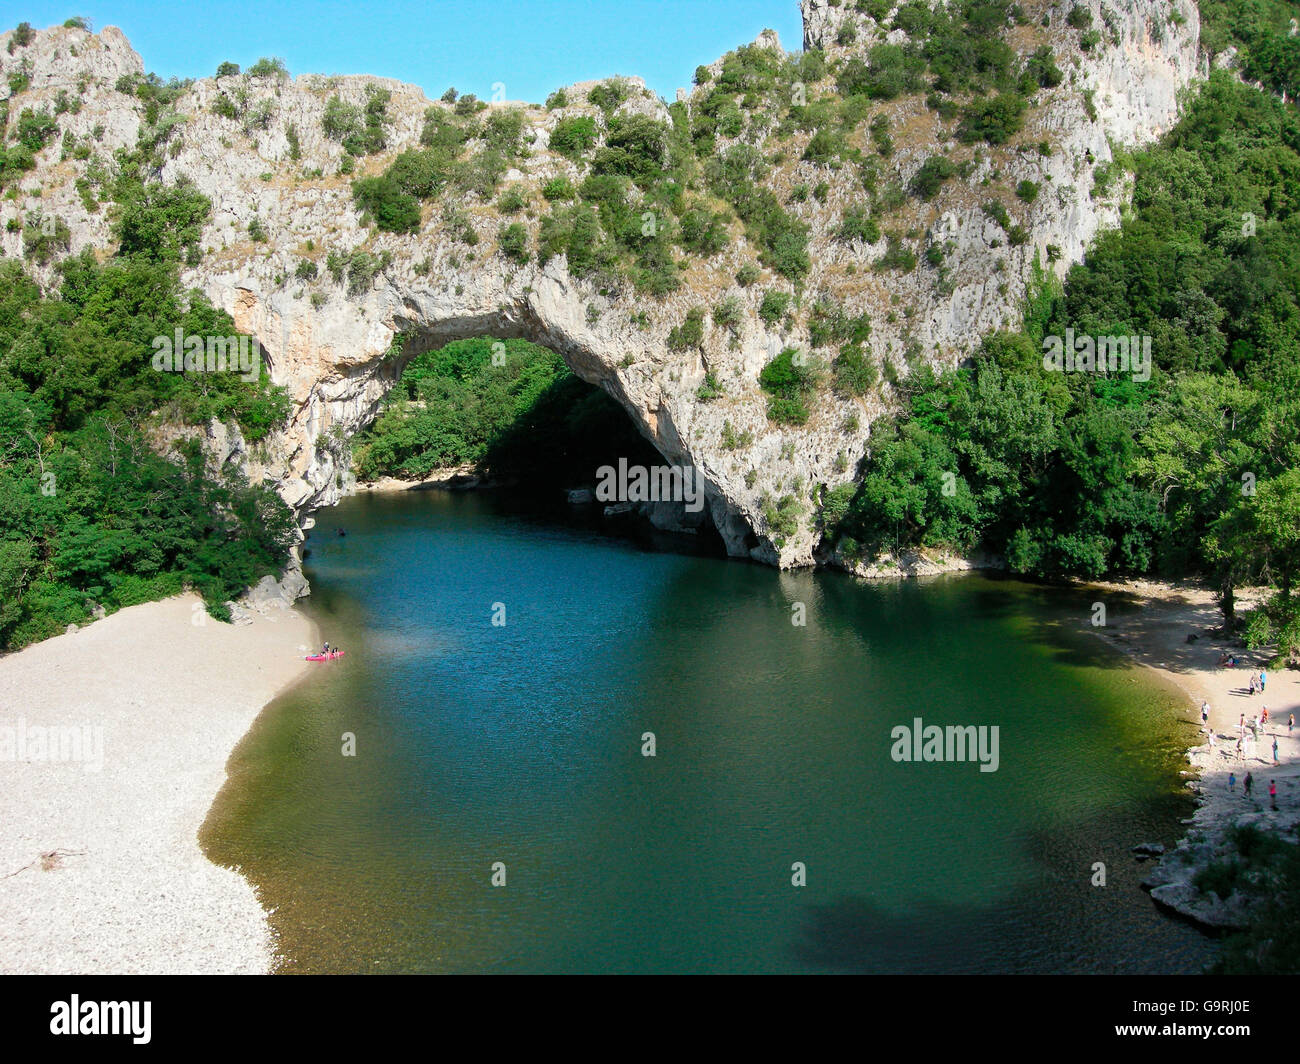 Pont d'Arc, Les Gorges de l'Ardèche, l'arche de pierre, rivière, Aredeche Aiguze, Languedoc-Roussillon, France, Europe Banque D'Images